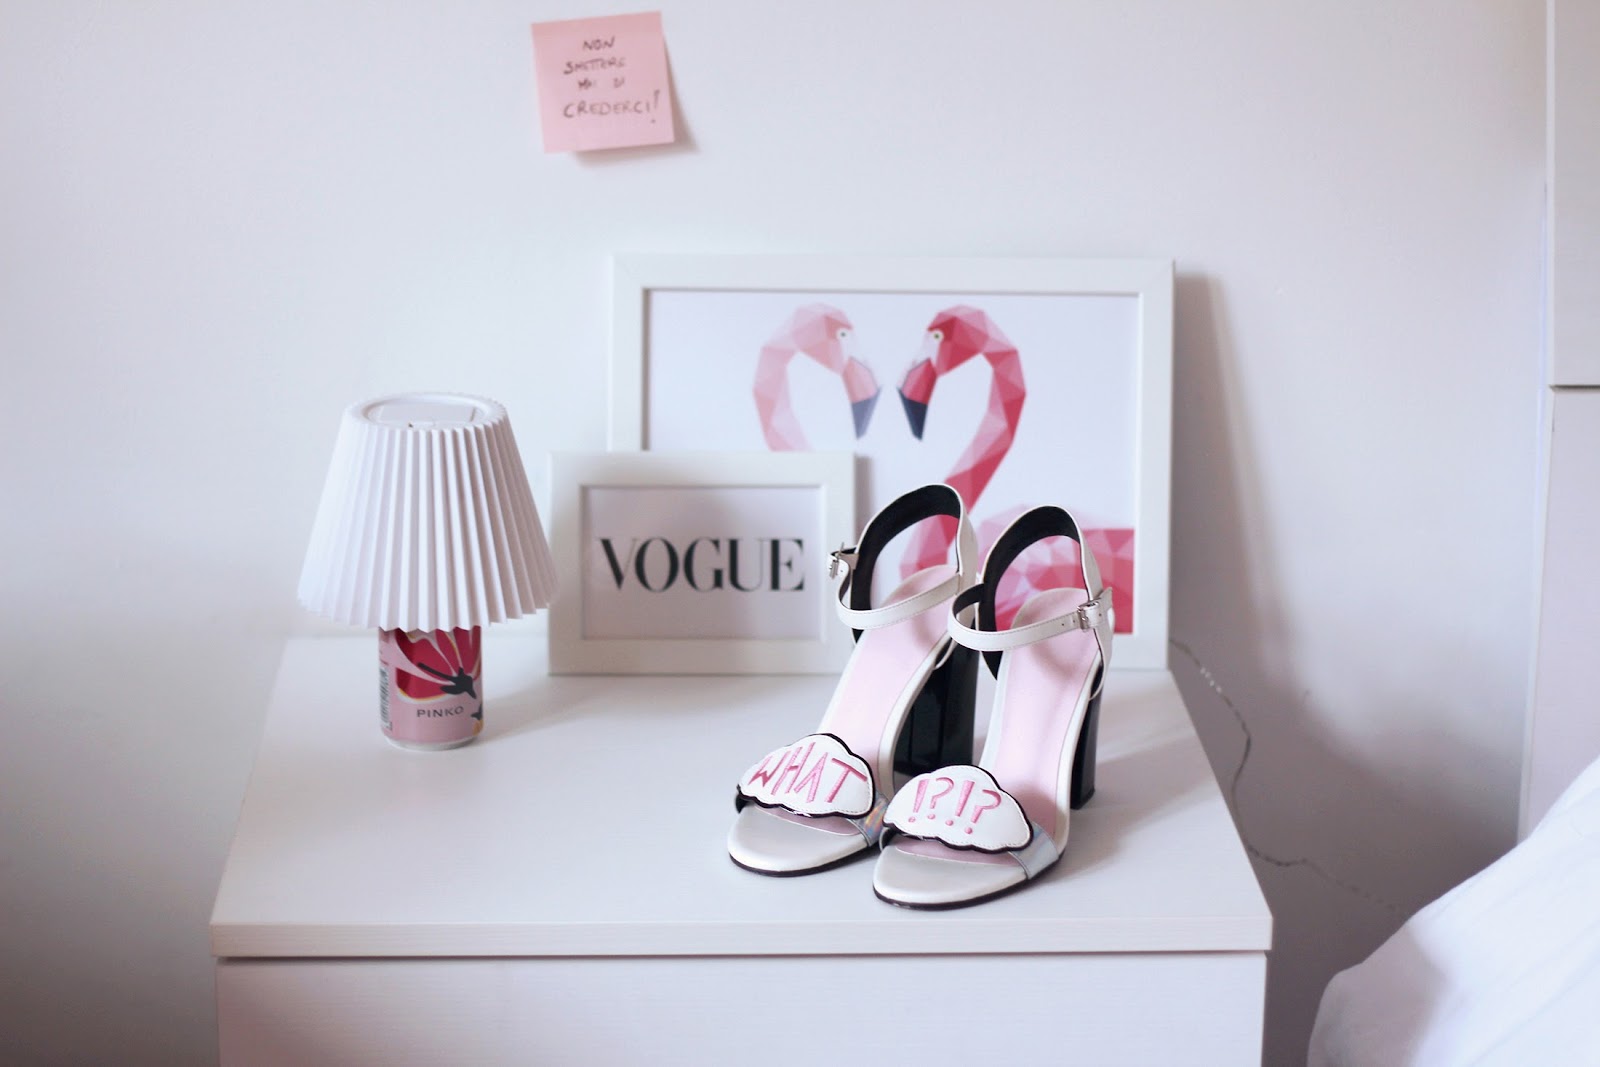 fashion shoes heels sandals asos flamingo interior design home pink sophia webster vogue glamour shoeting